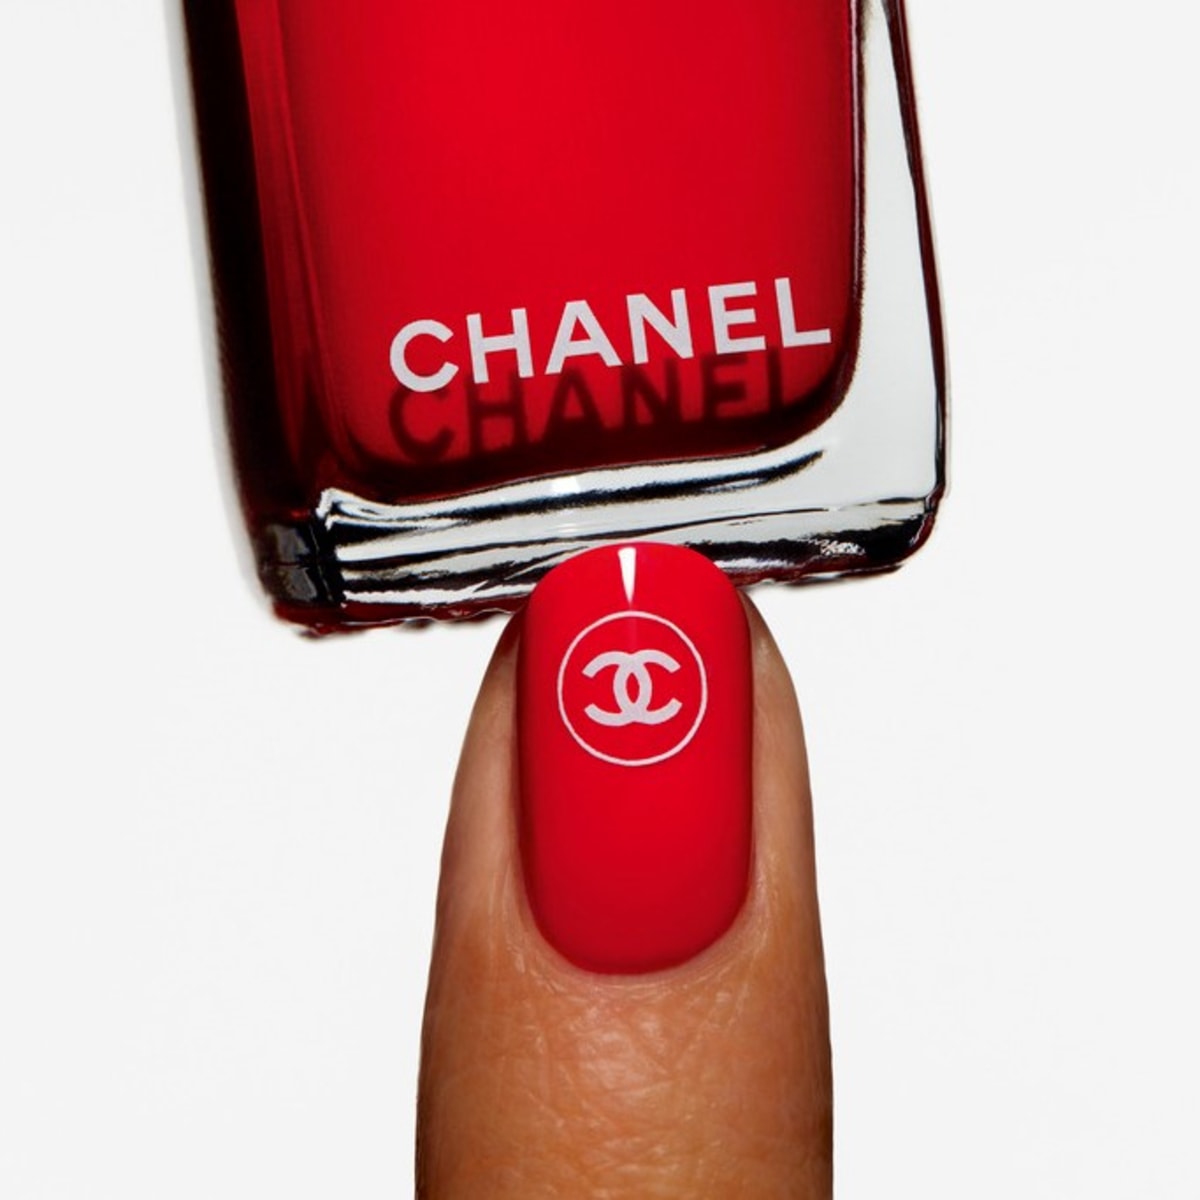 El Kit de Chanel para hacerte la manicura en casa